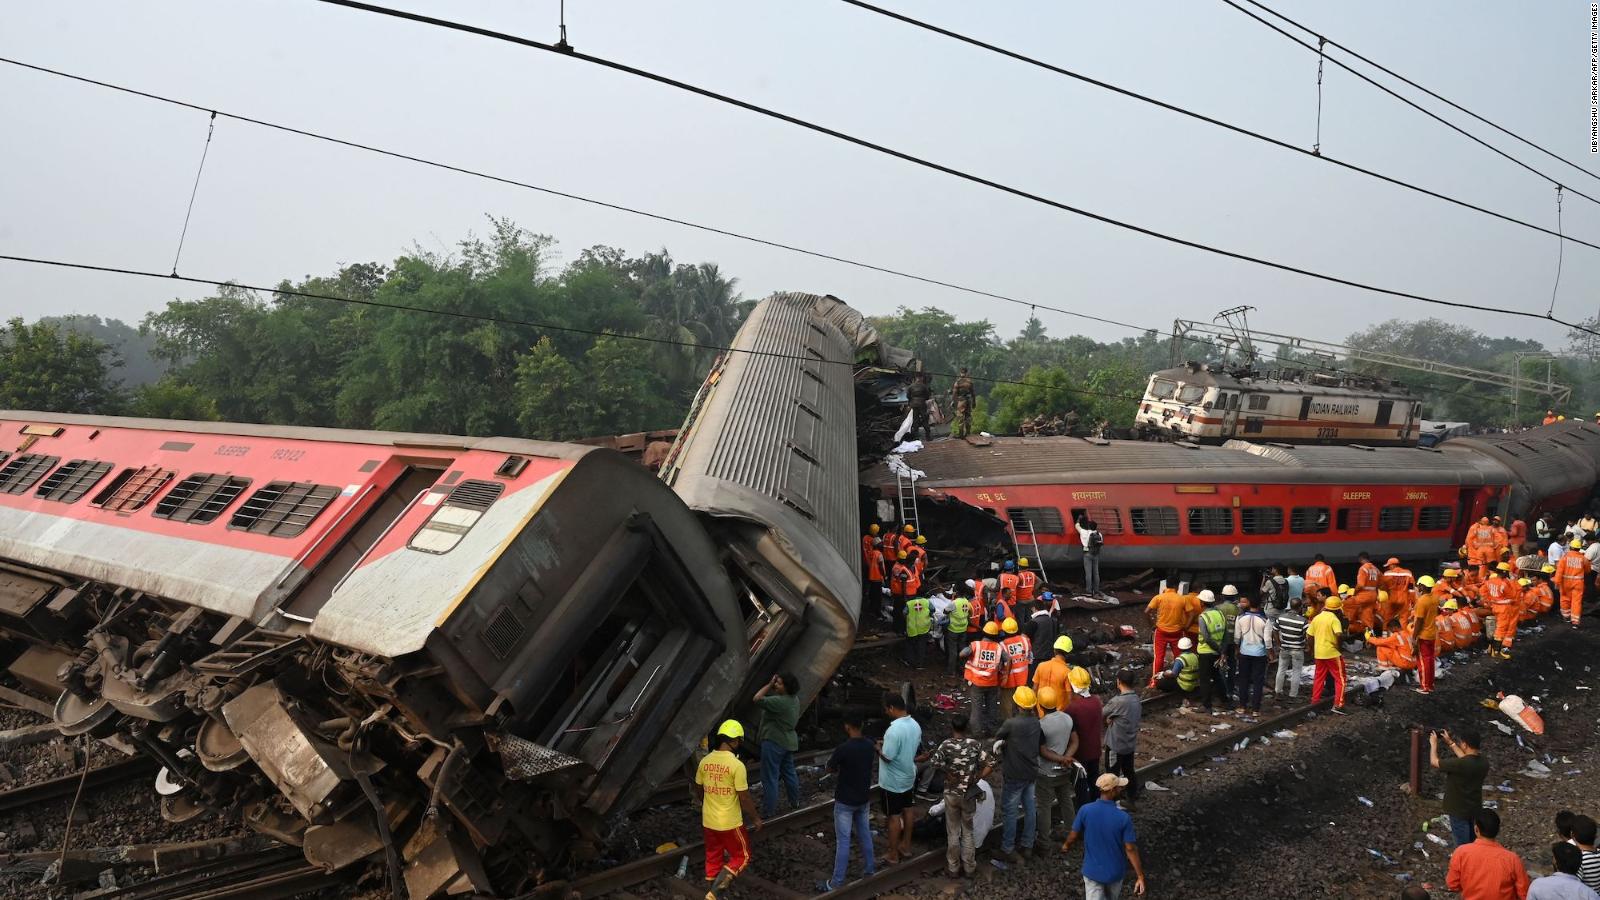 Photo of Se ha determinado la causa del fatal accidente de tren en India y las personas responsables, dice el ministro de Ferrocarriles.